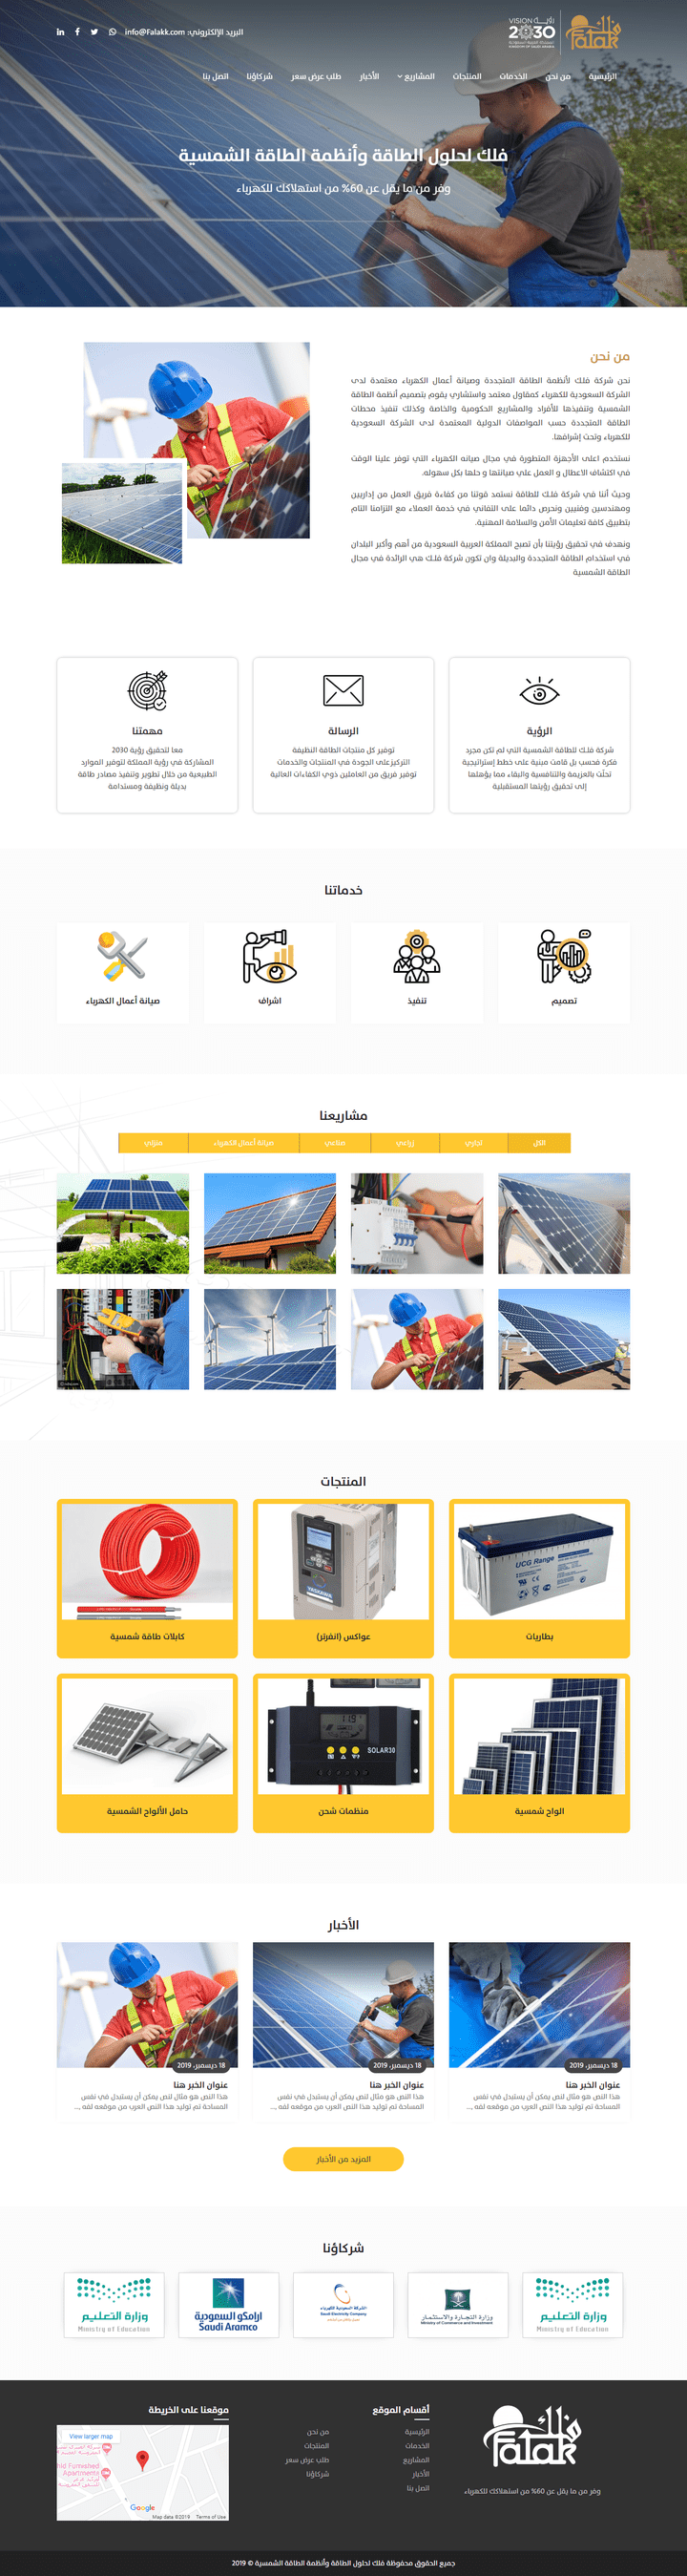 موقع فلك لحلول الطاقة وأنظمة الطاقة الشمسية